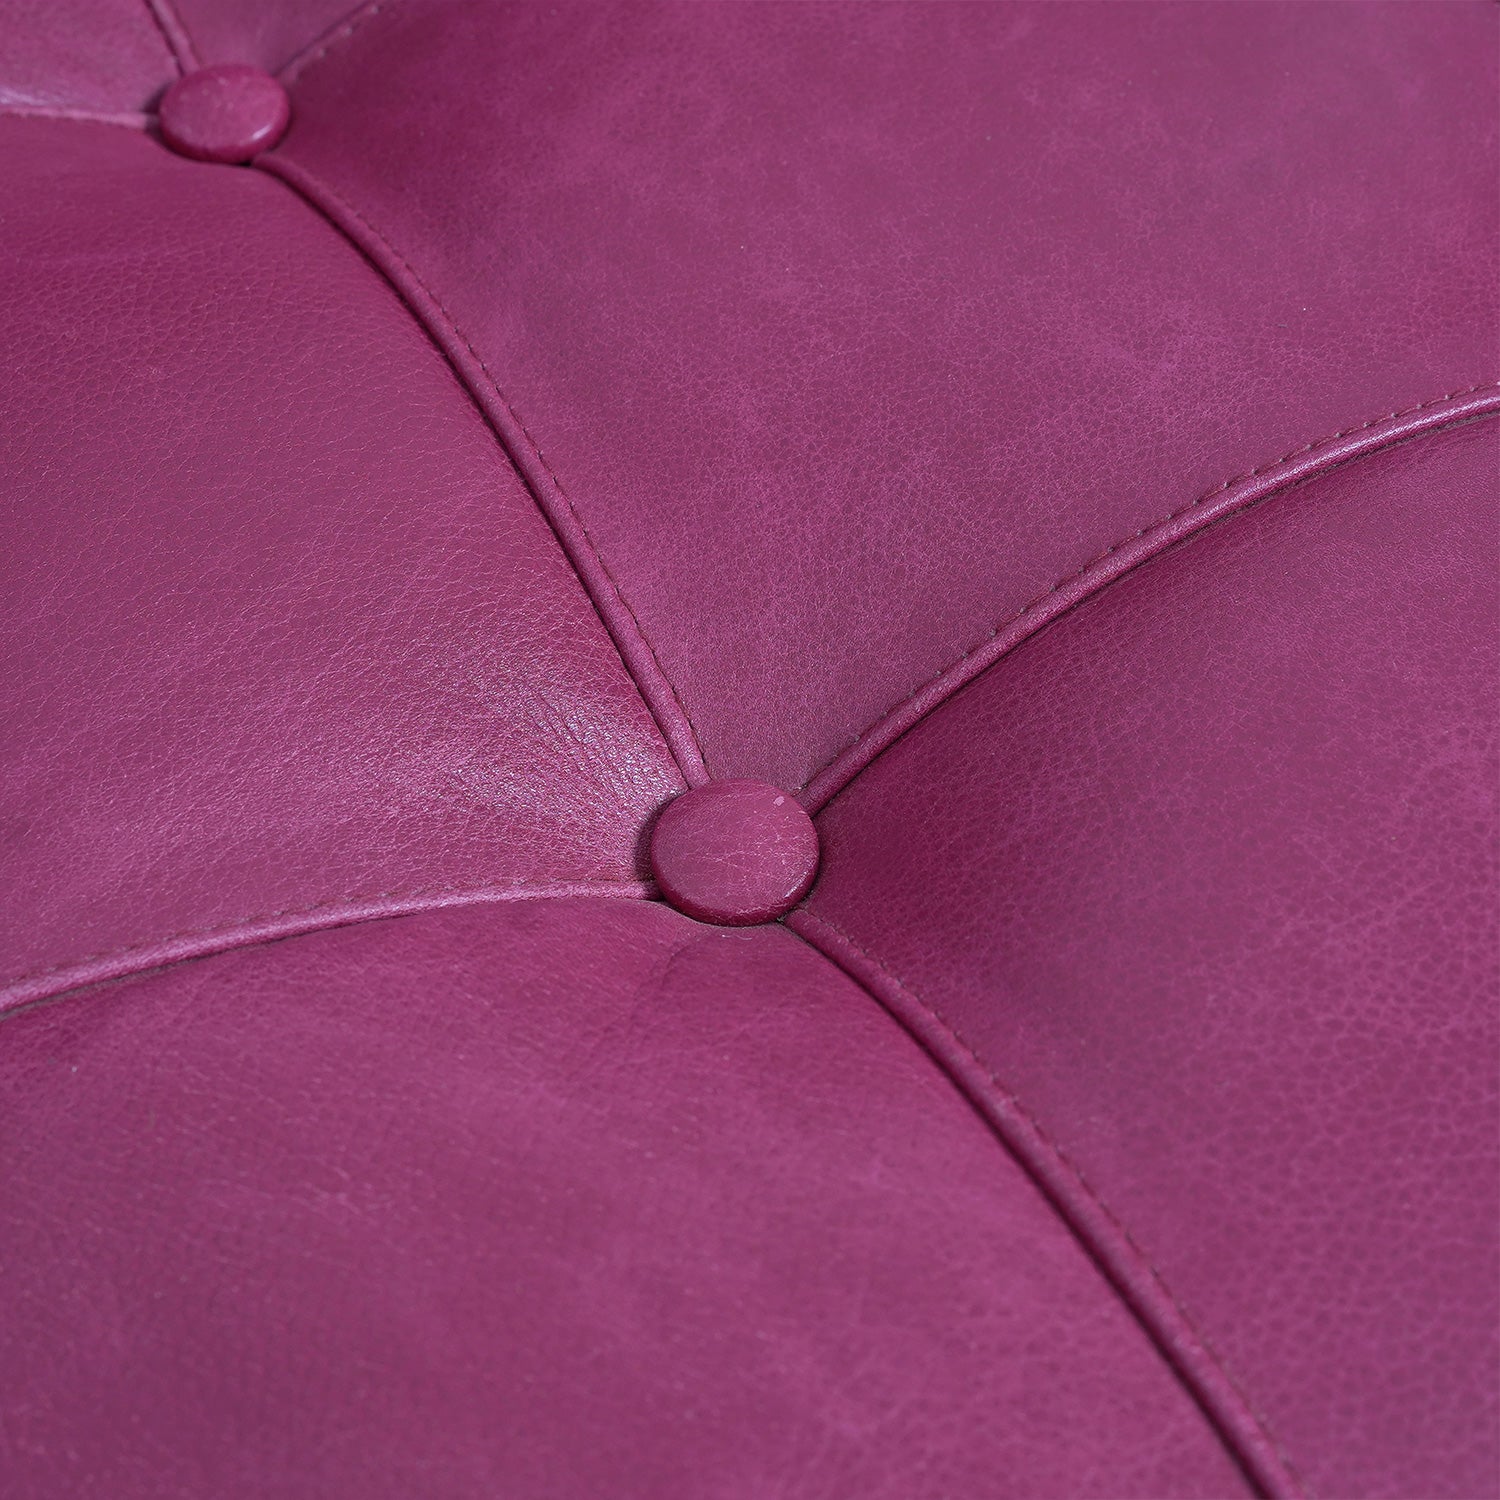 Leatham Ara Antigo Leather Chair Garnet Button Close UP